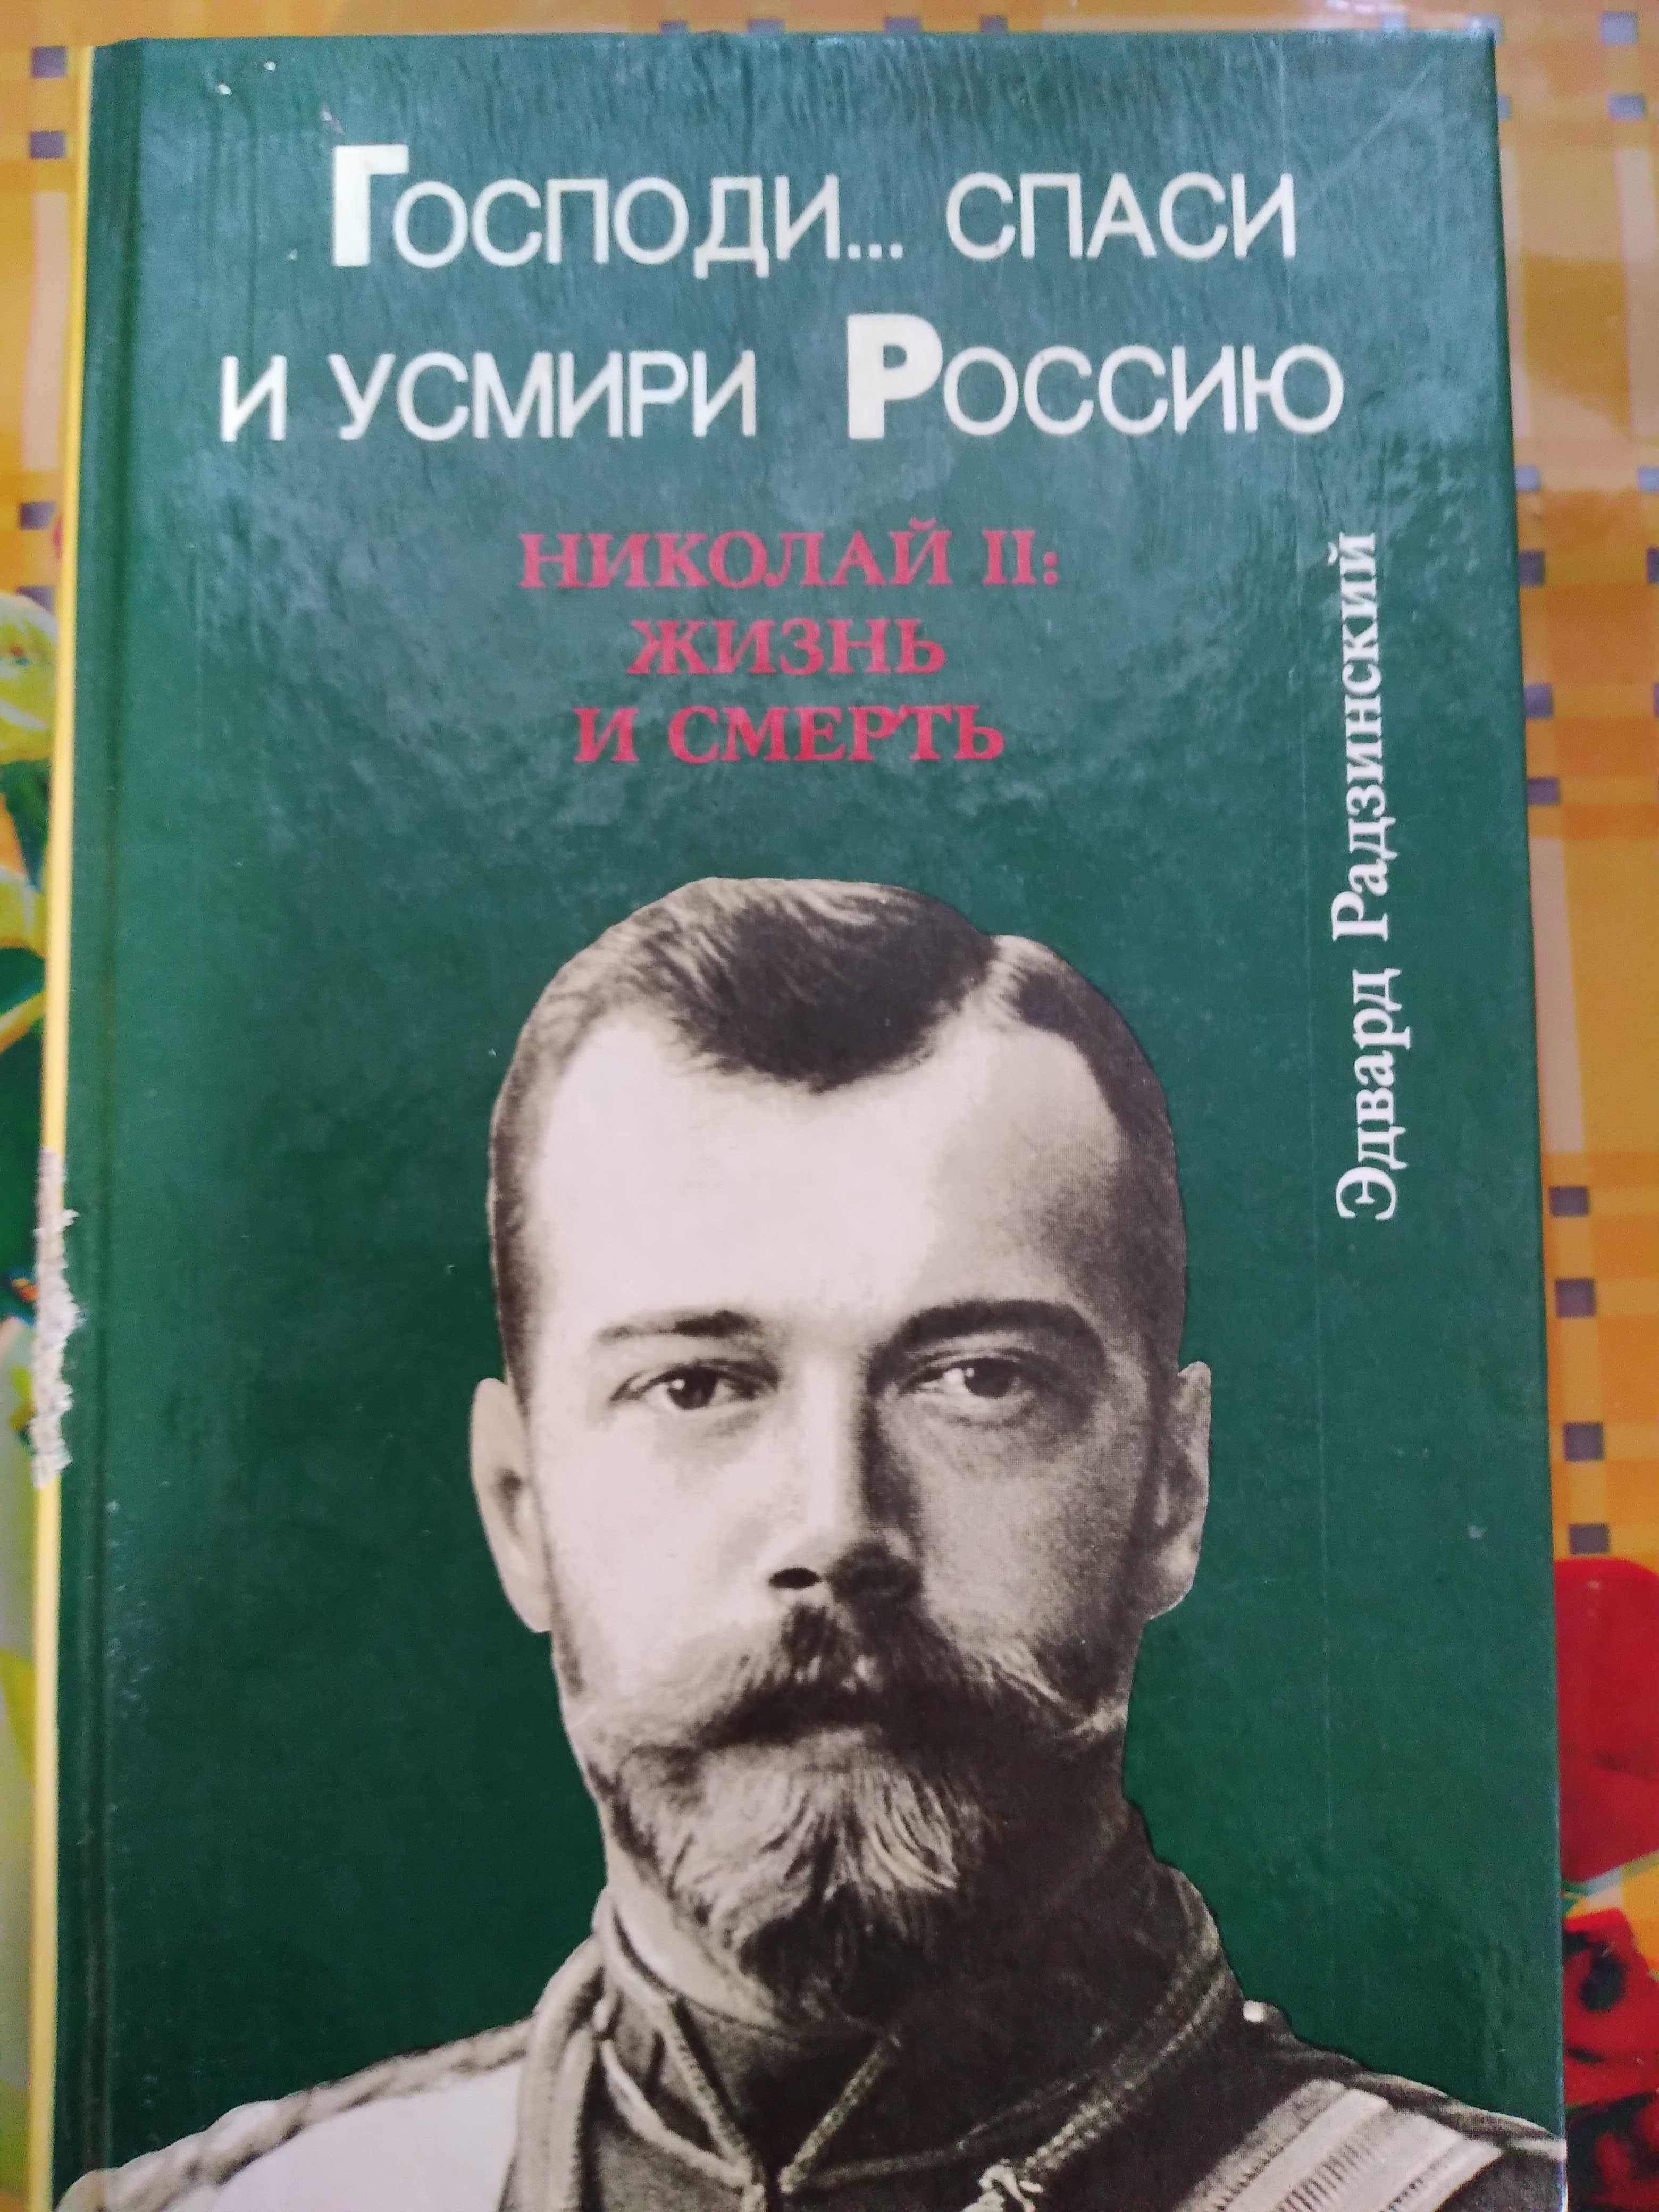 "Николай II: Жизнь и смерть" Эдвард Радзинский.